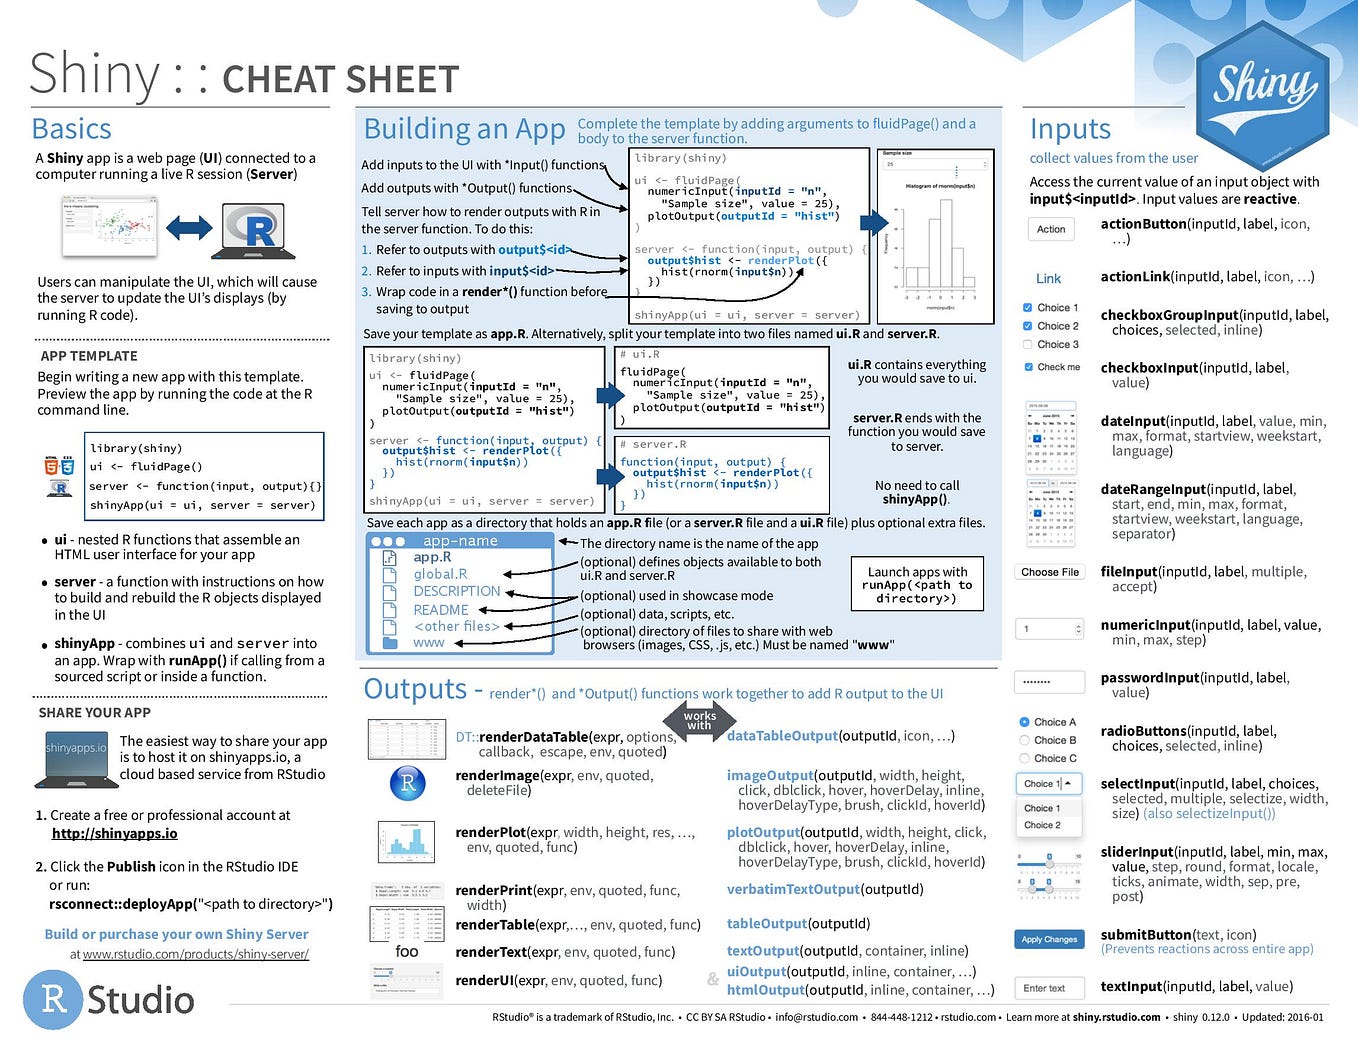 Data Visualization with ggplot2 Cheat Sheet